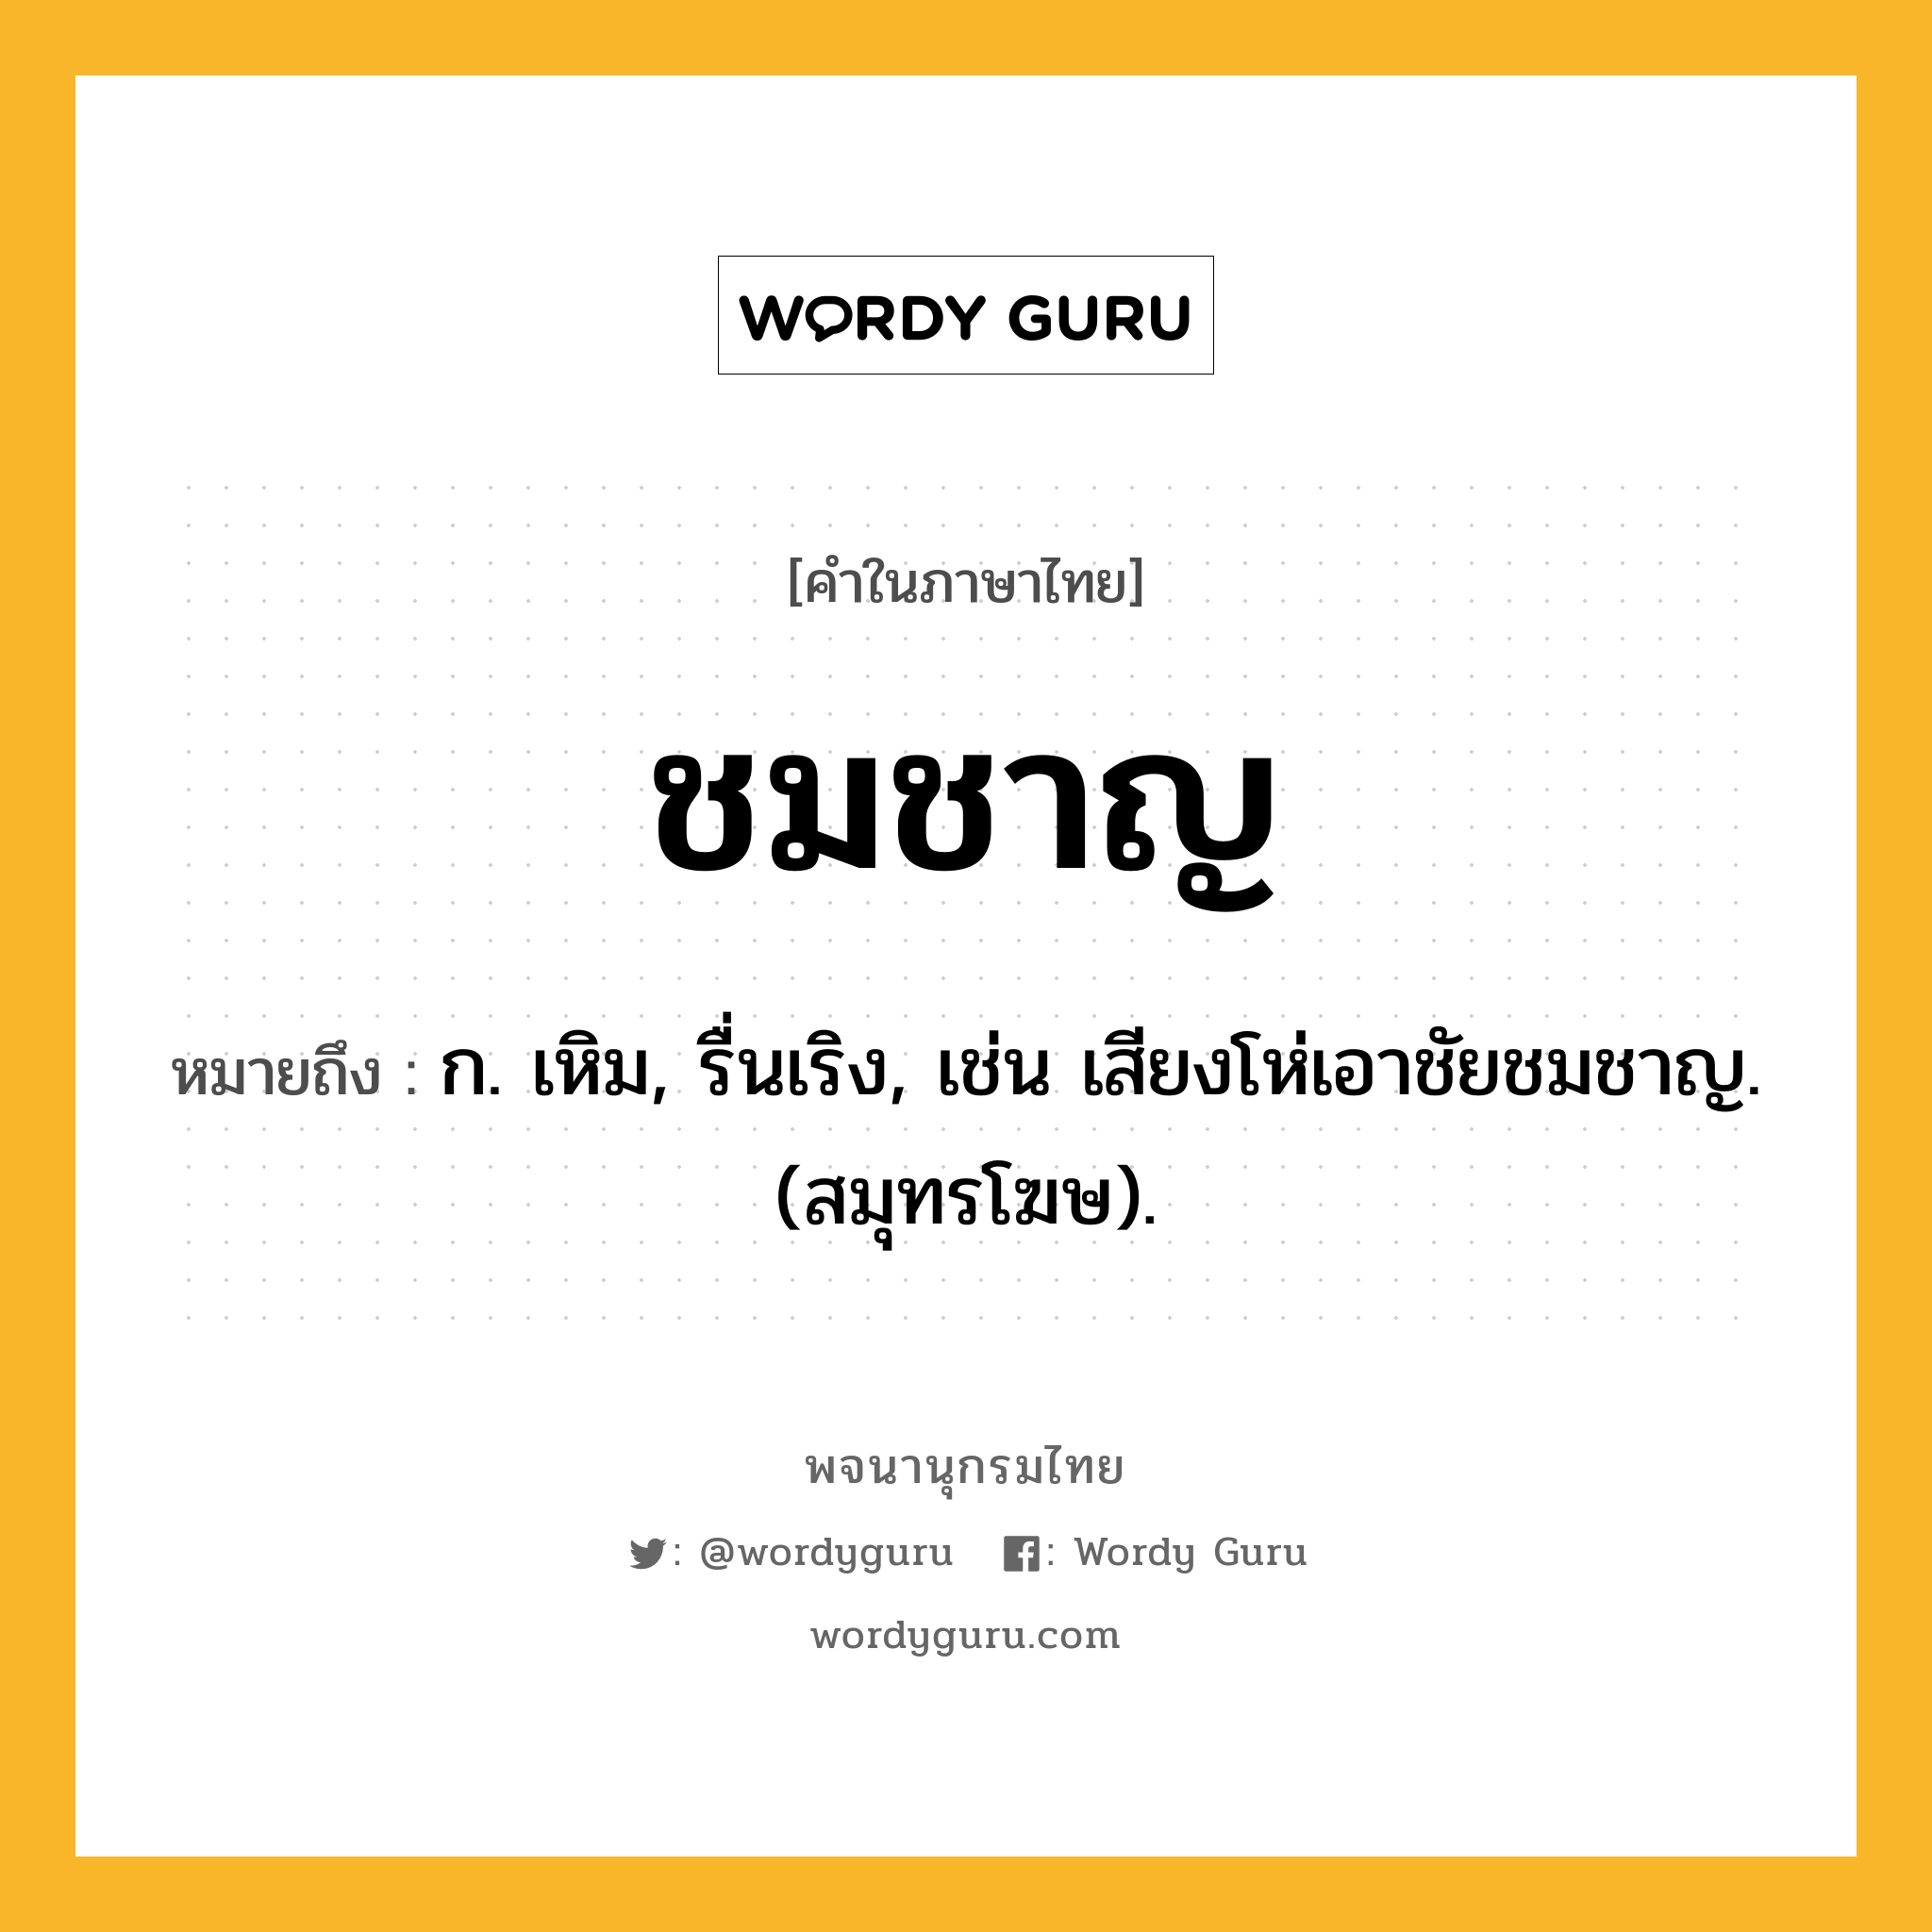 ชมชาญ หมายถึงอะไร?, คำในภาษาไทย ชมชาญ หมายถึง ก. เหิม, รื่นเริง, เช่น เสียงโห่เอาชัยชมชาญ. (สมุทรโฆษ).